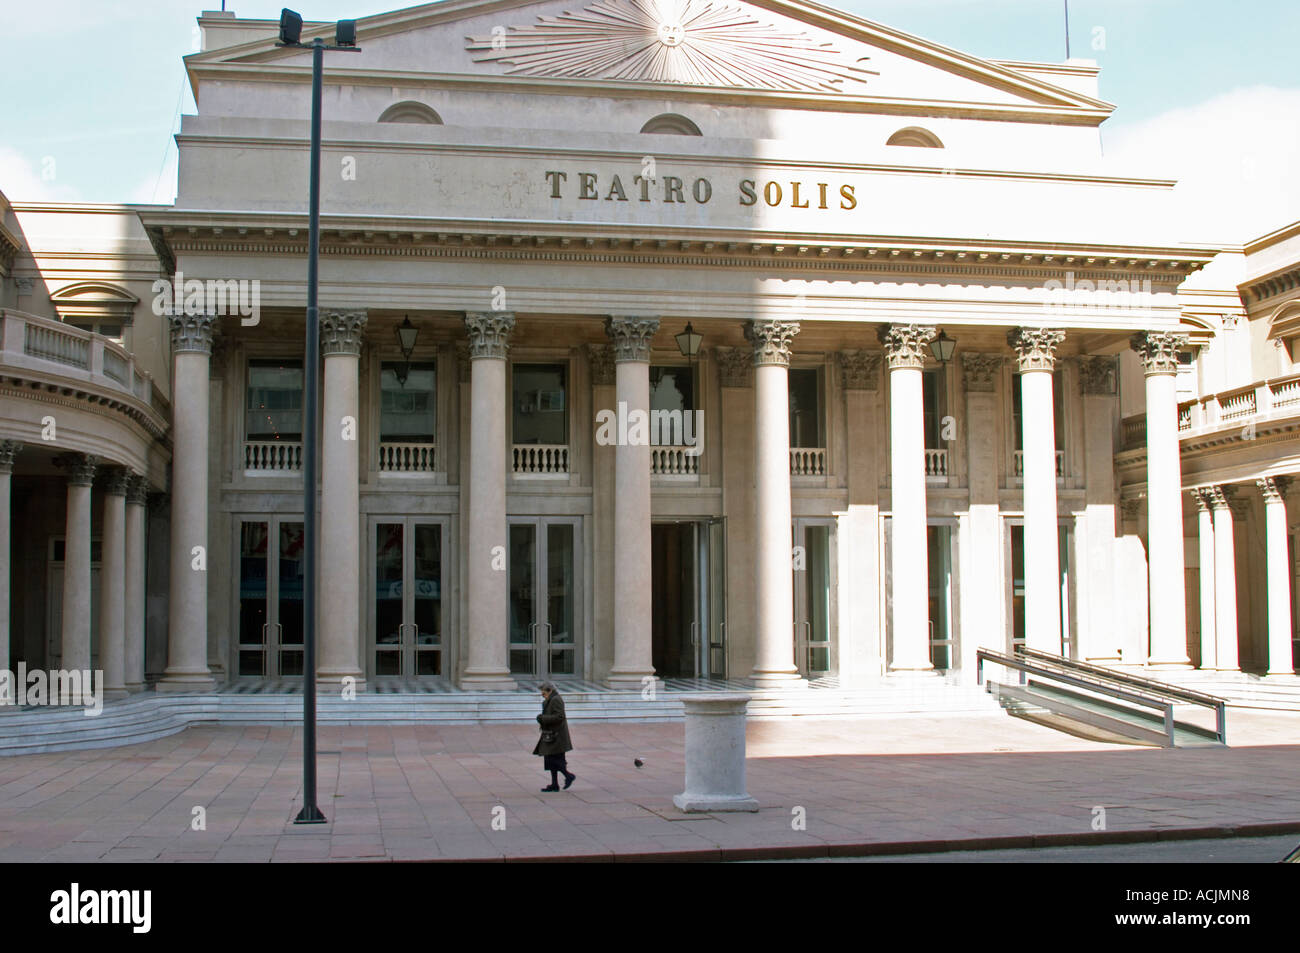 Teatro Théâtre Solis dans le centre ville avec l'imposition de piliers sur la façade, une petite femme en noir en marche. Montevideo, Uruguay, Amérique du Sud Banque D'Images